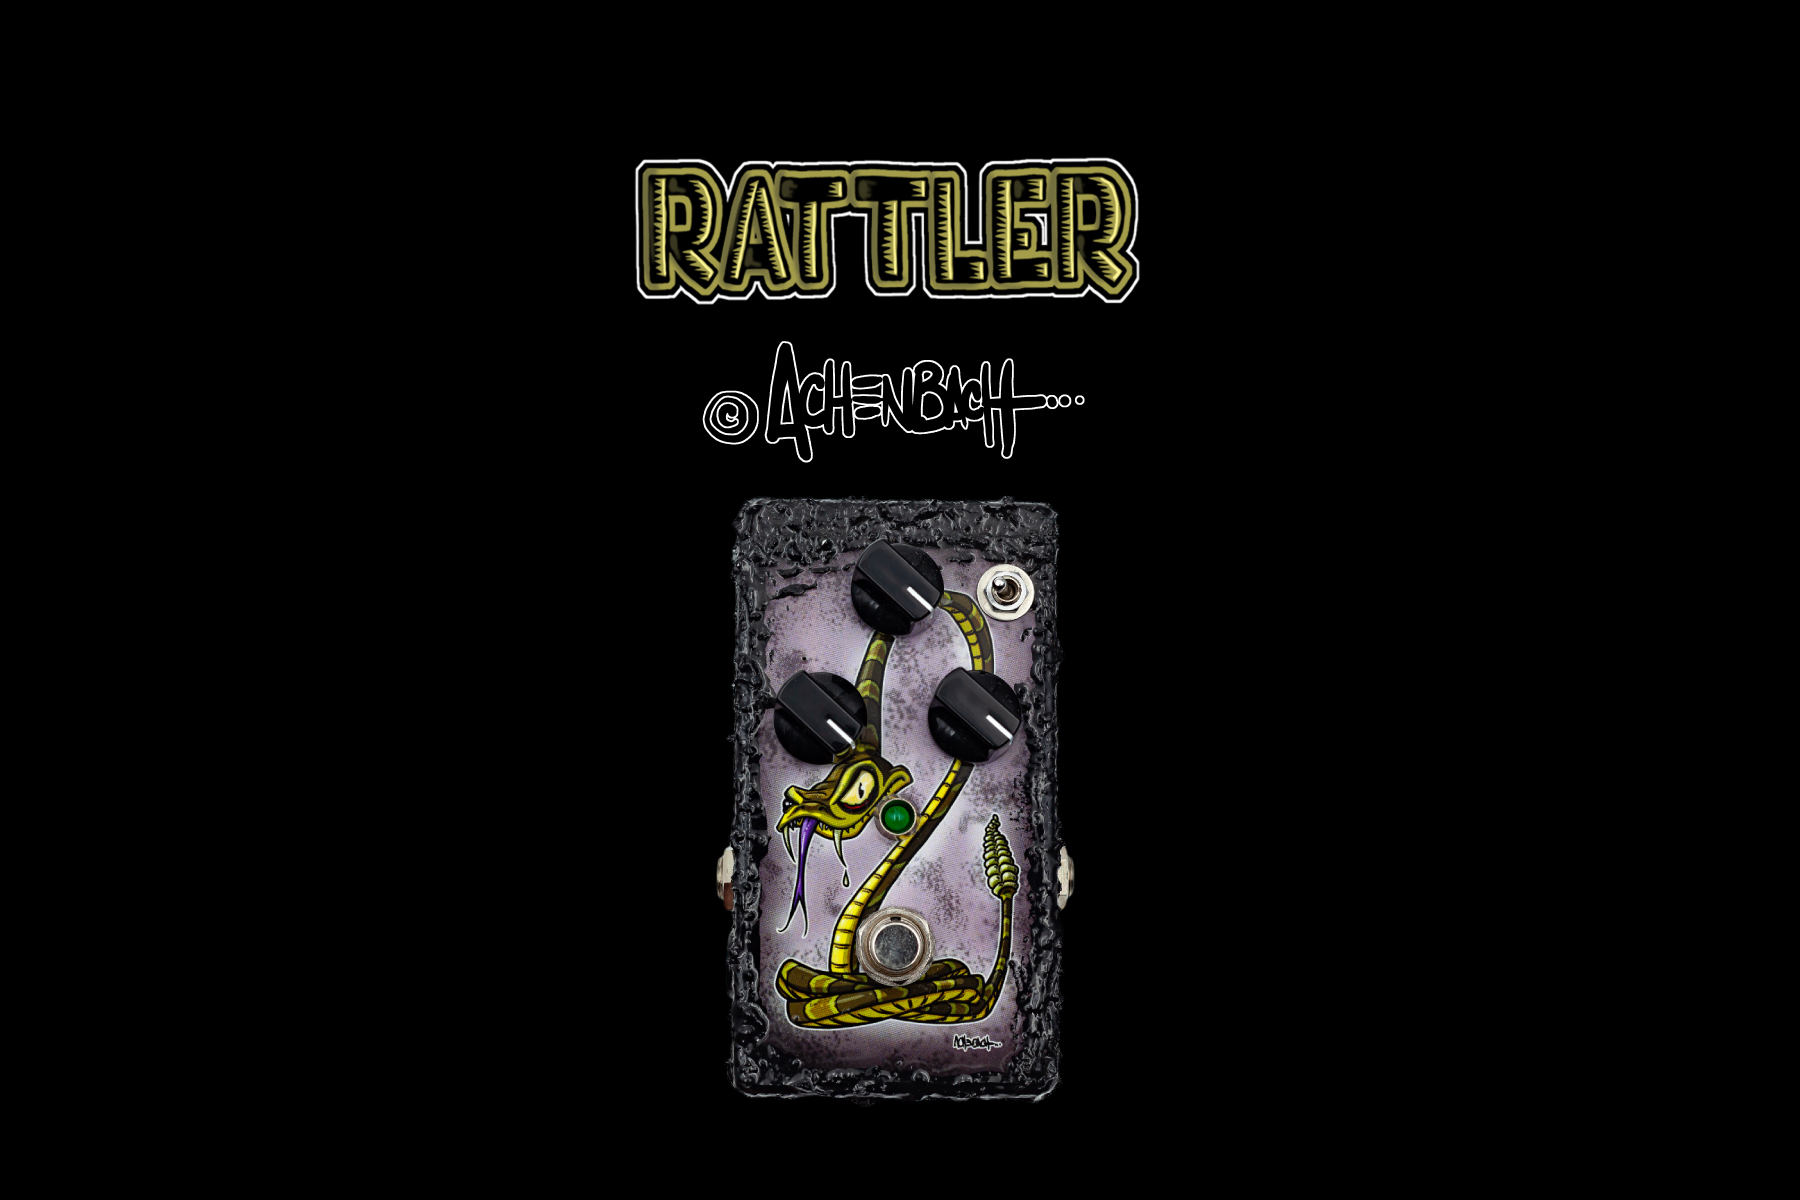 “Achenbach” Rattler ltd